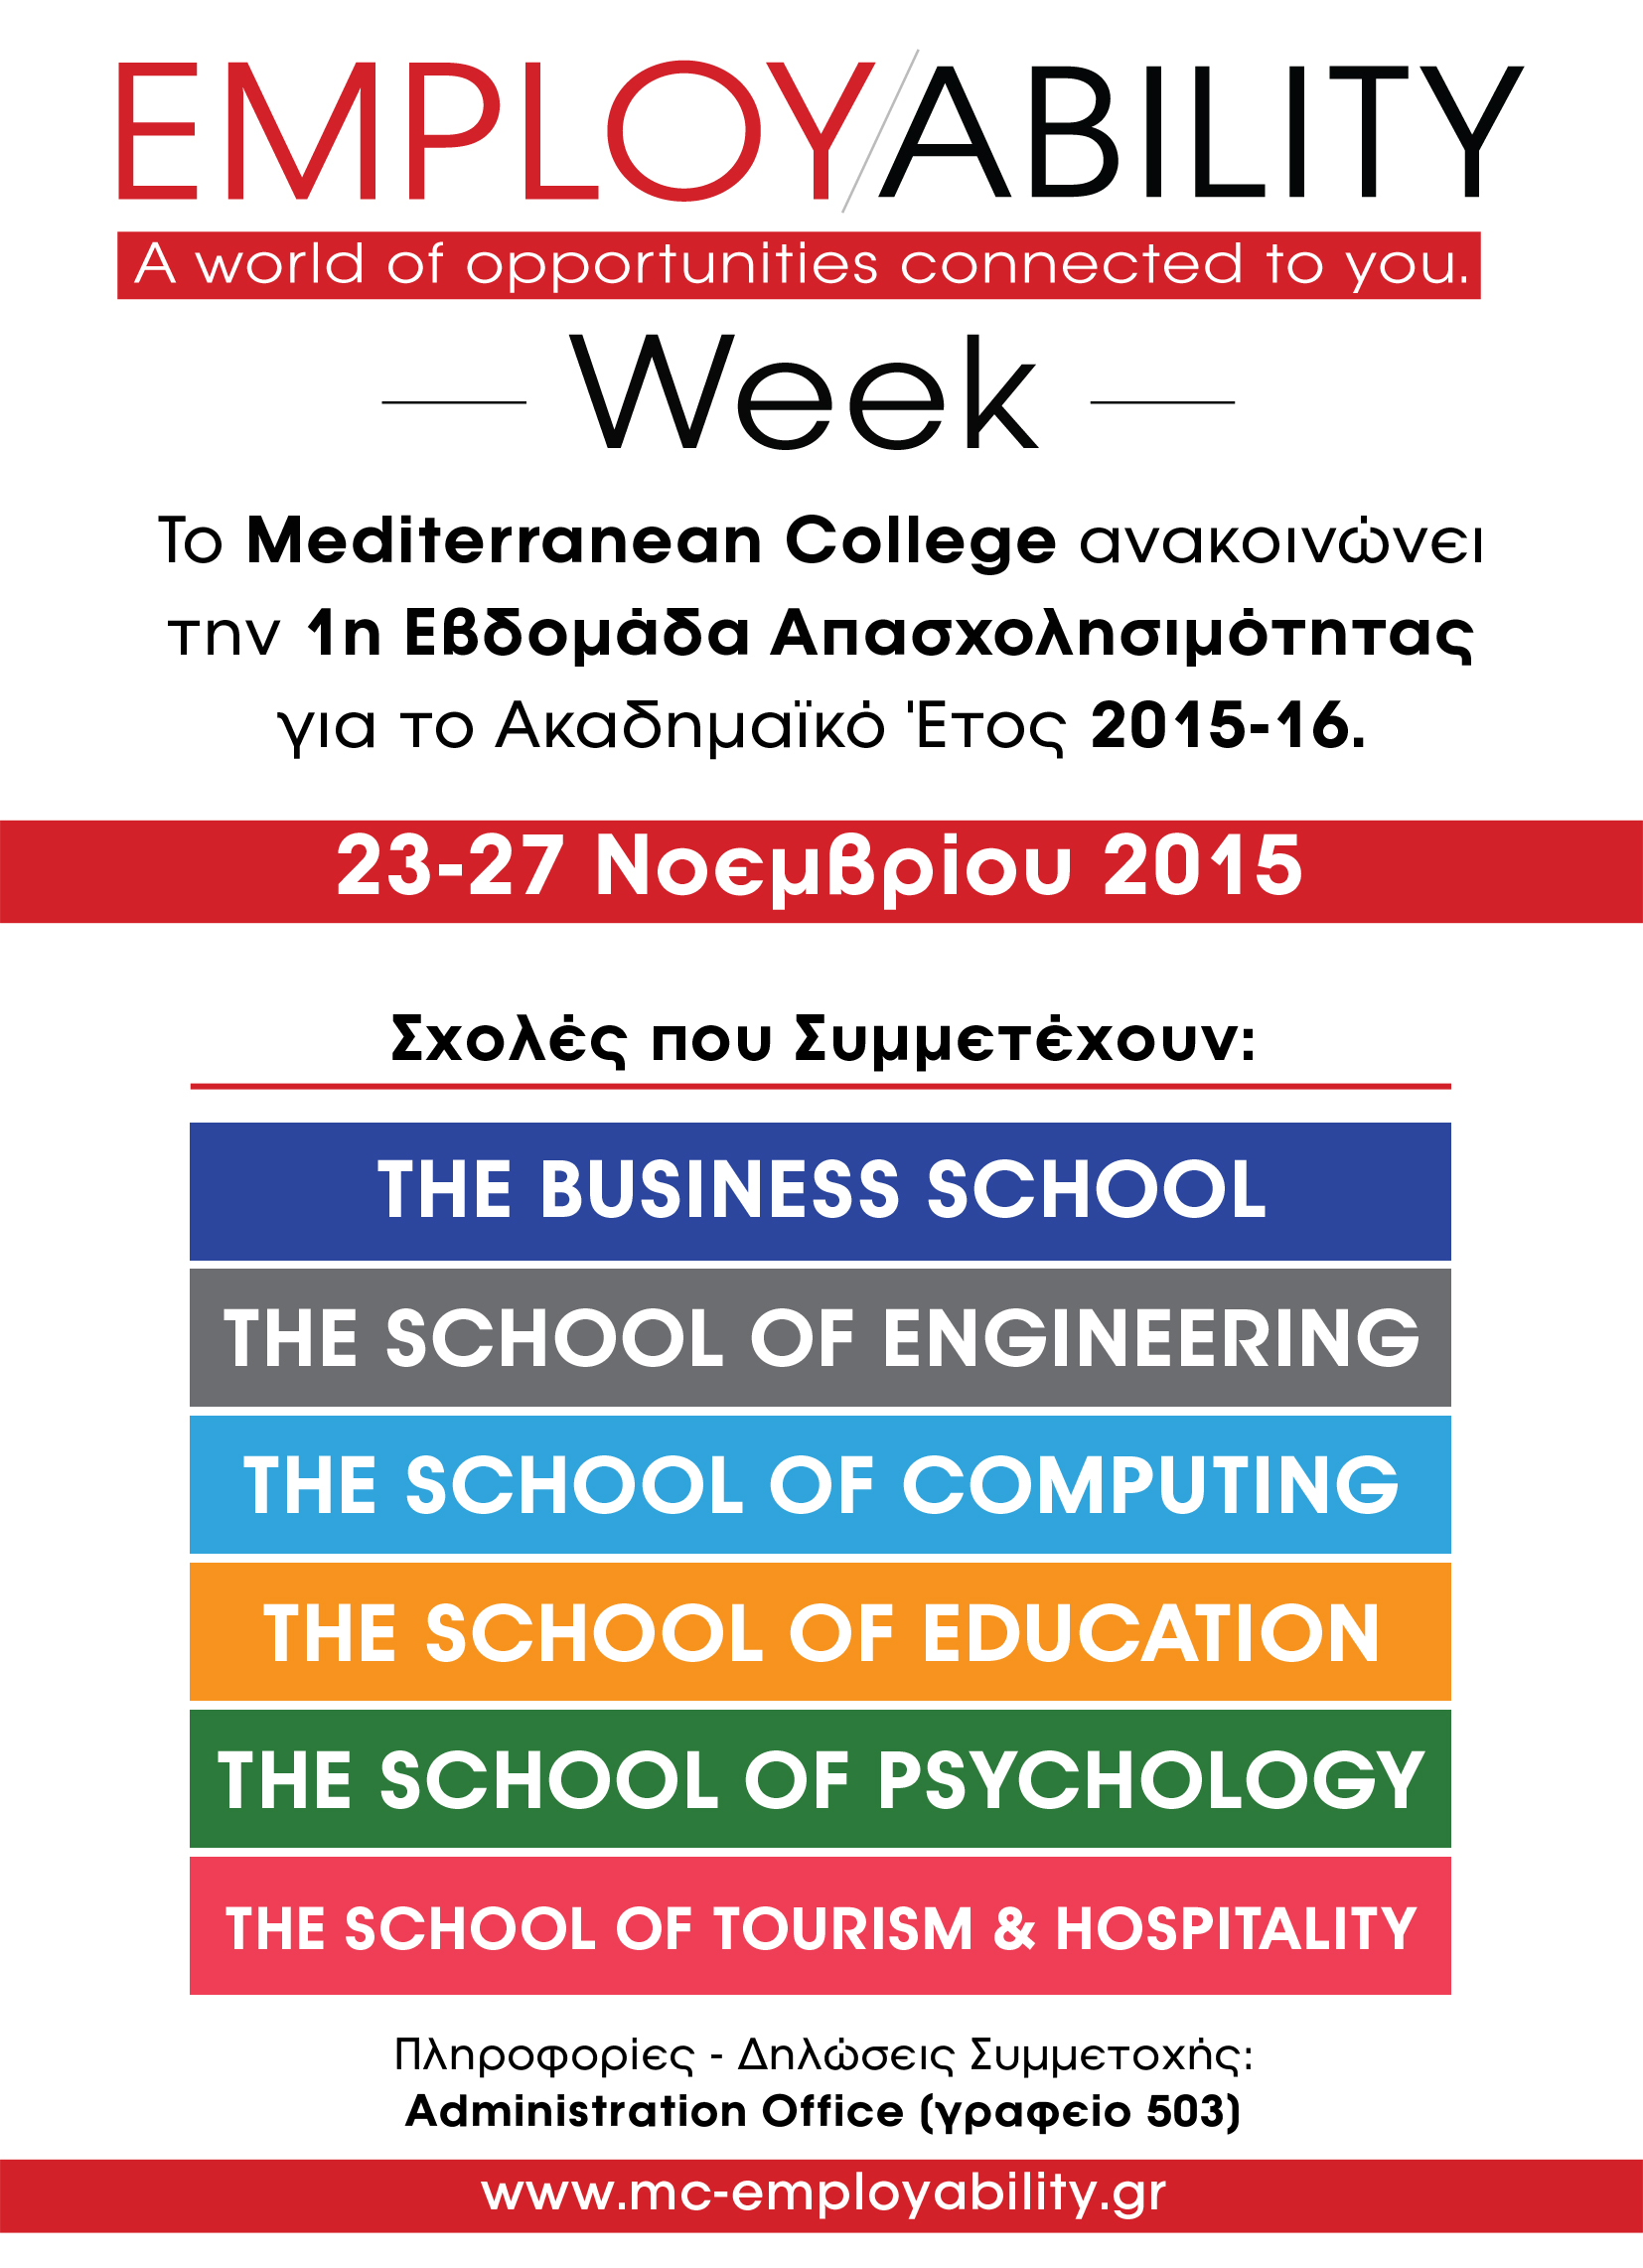 Mediterranean College 7ο Employability Week: 23-27 Νοεμβρίου 2015